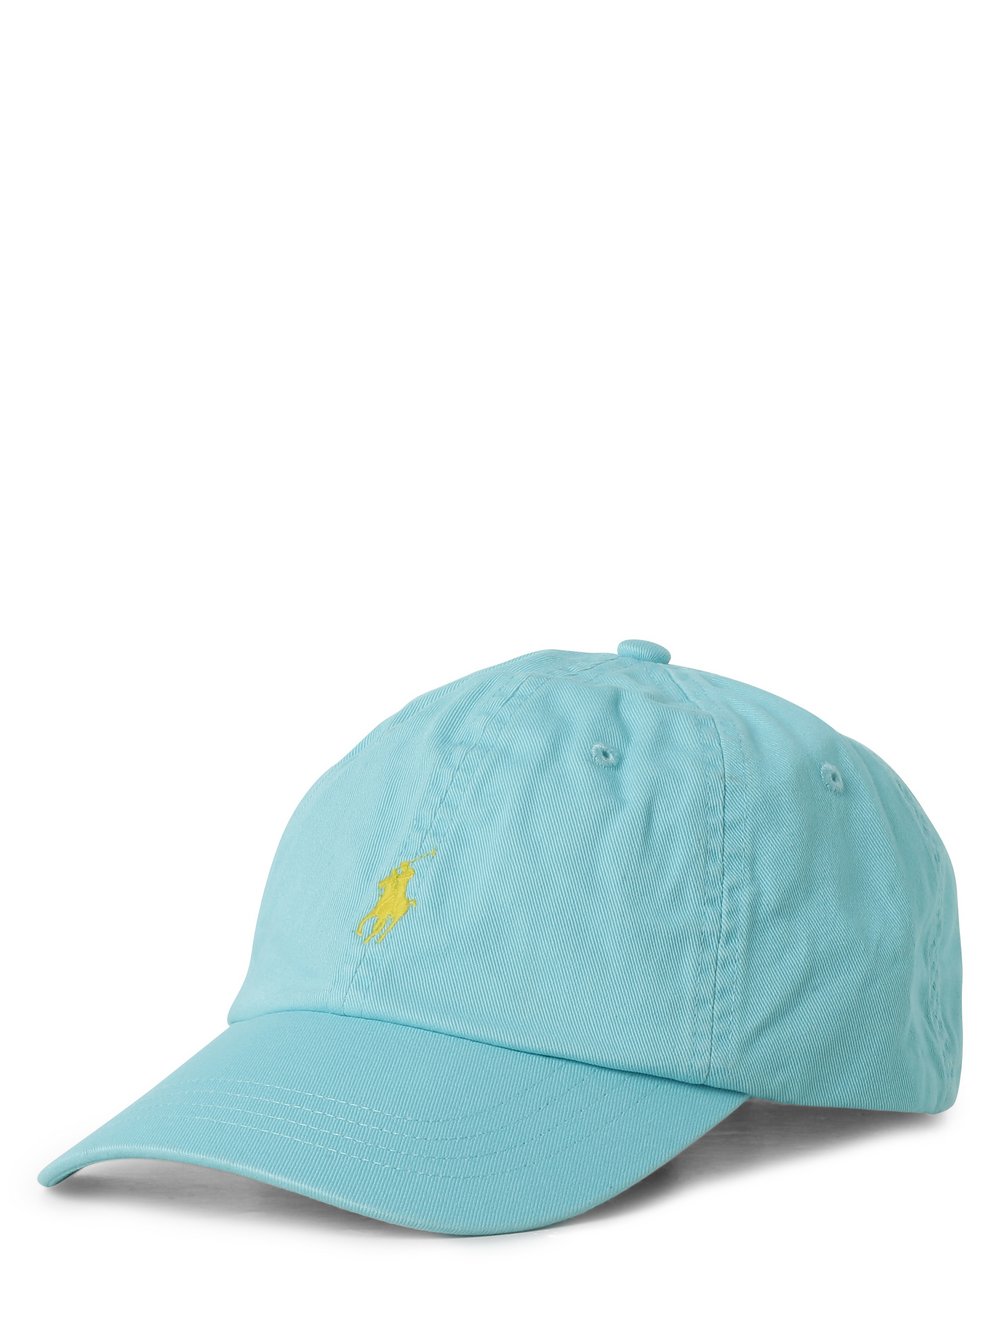 Polo Ralph Lauren - Męska czapka z daszkiem, niebieski|zielony